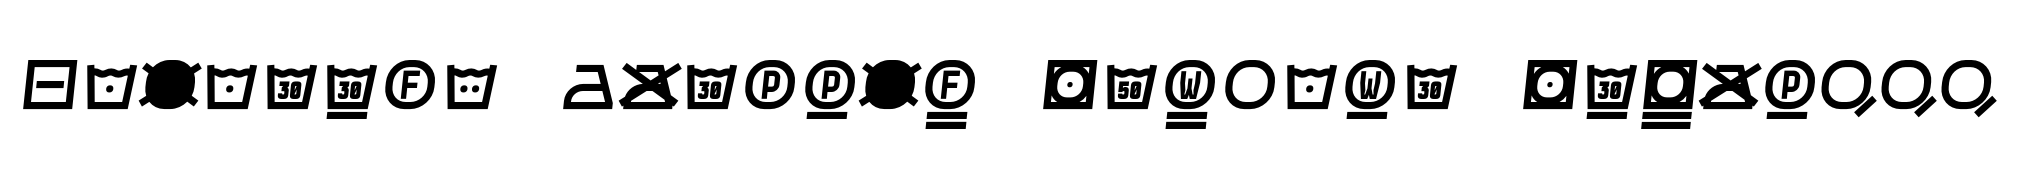 Monostep Washing Symbols Straight Regular Italic image